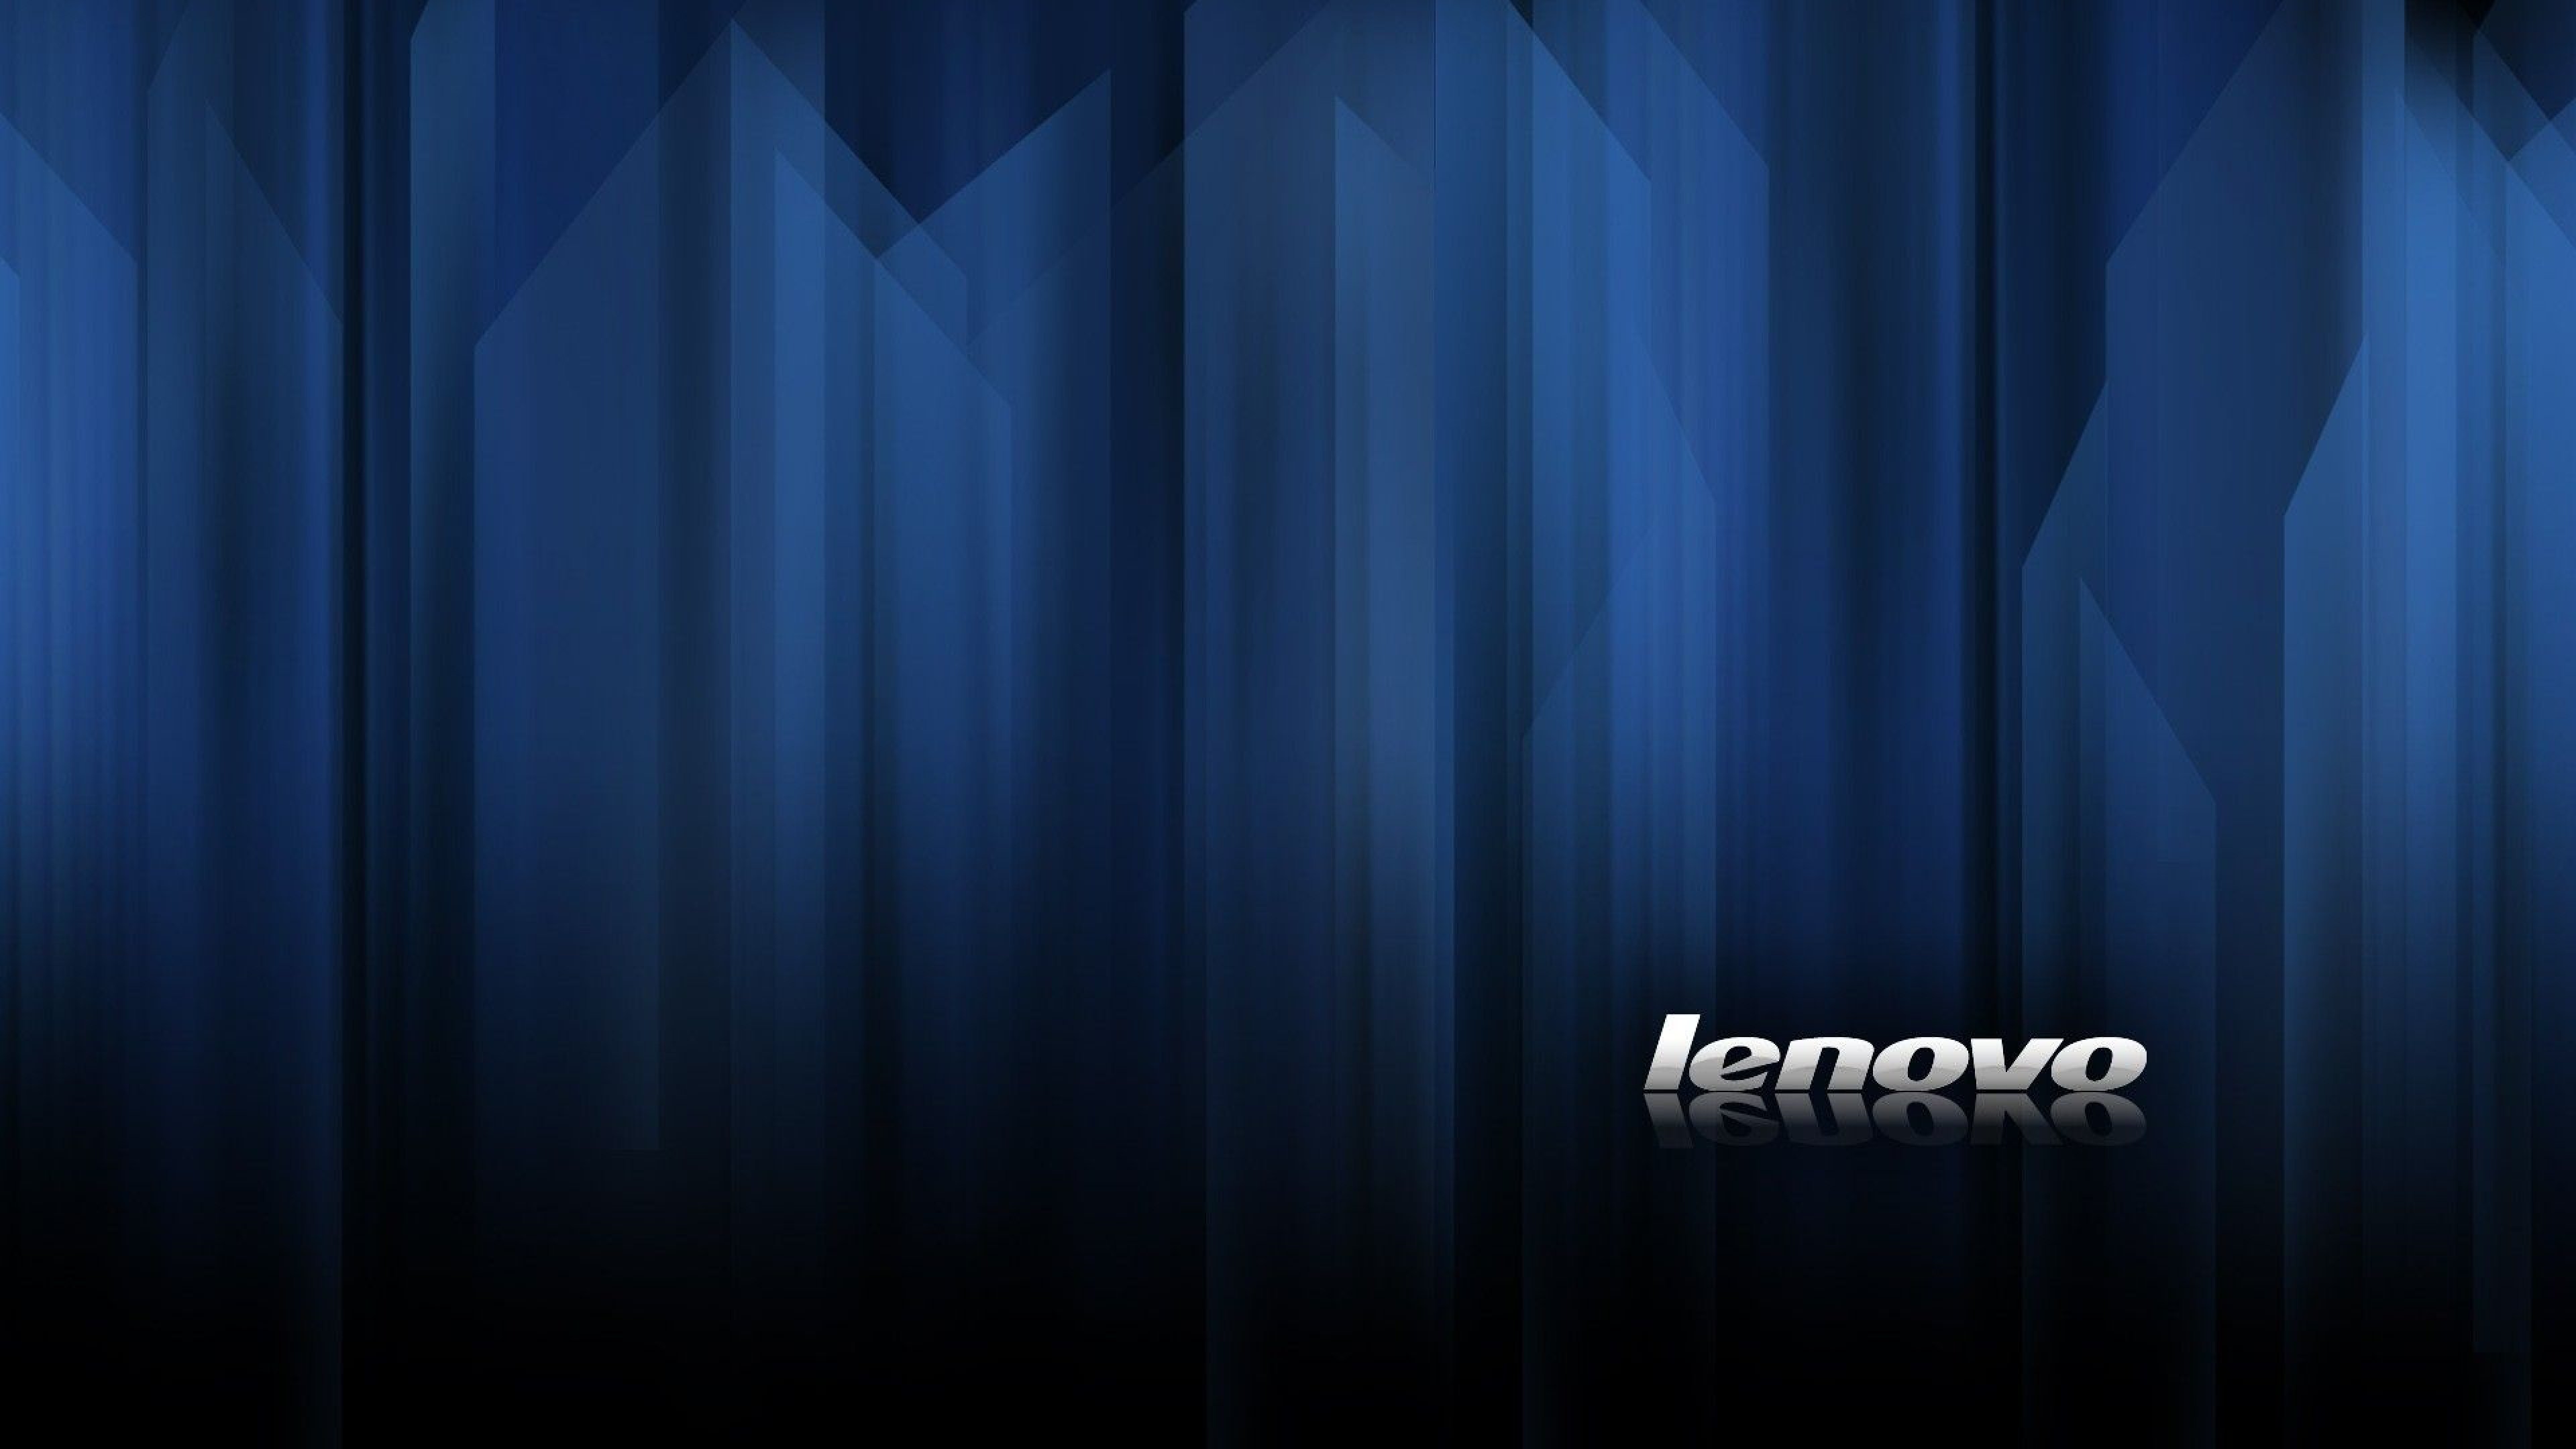 Lenovo Hd Wallpapers